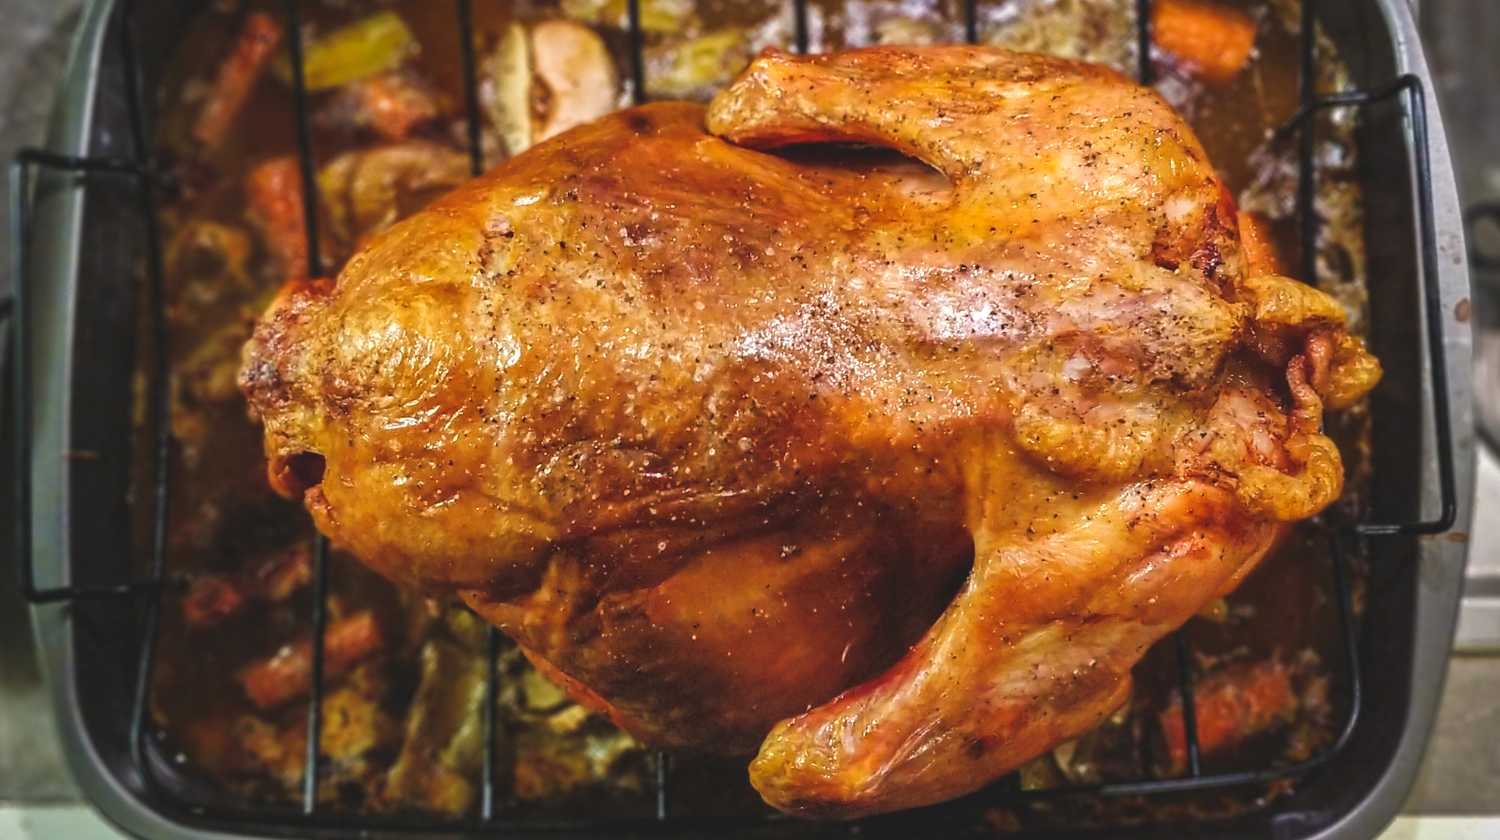 Roasted Turkey On Top of Grill | turkey seasoning rub